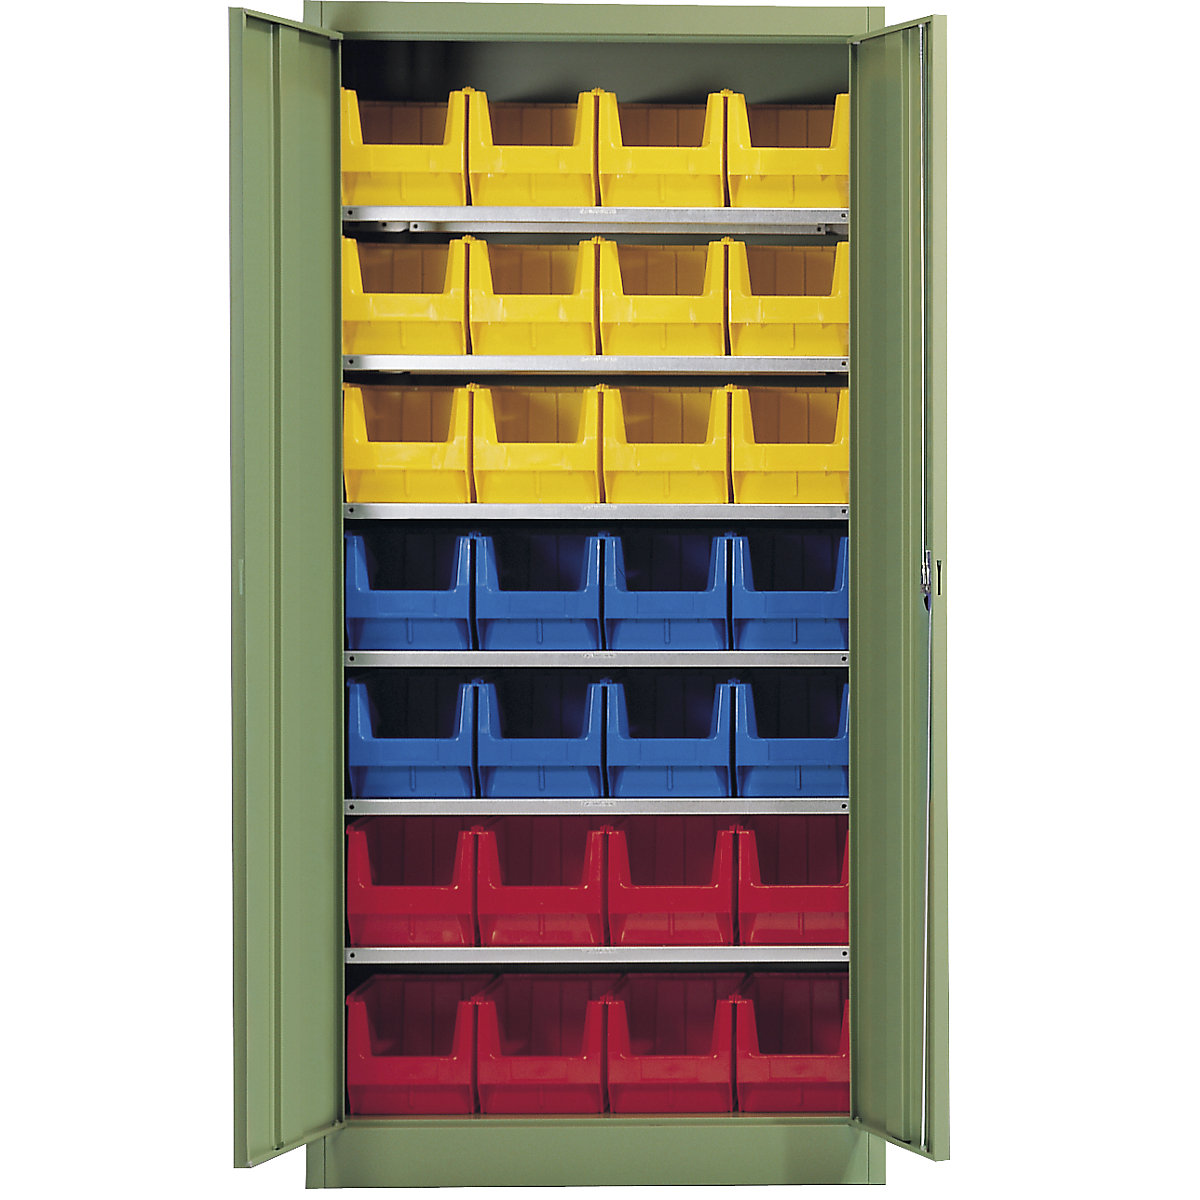 Skladová skříň, jednobarevná – mauser, s 28 přepravkami s viditelným obsahem, 6 polic, zelená-4